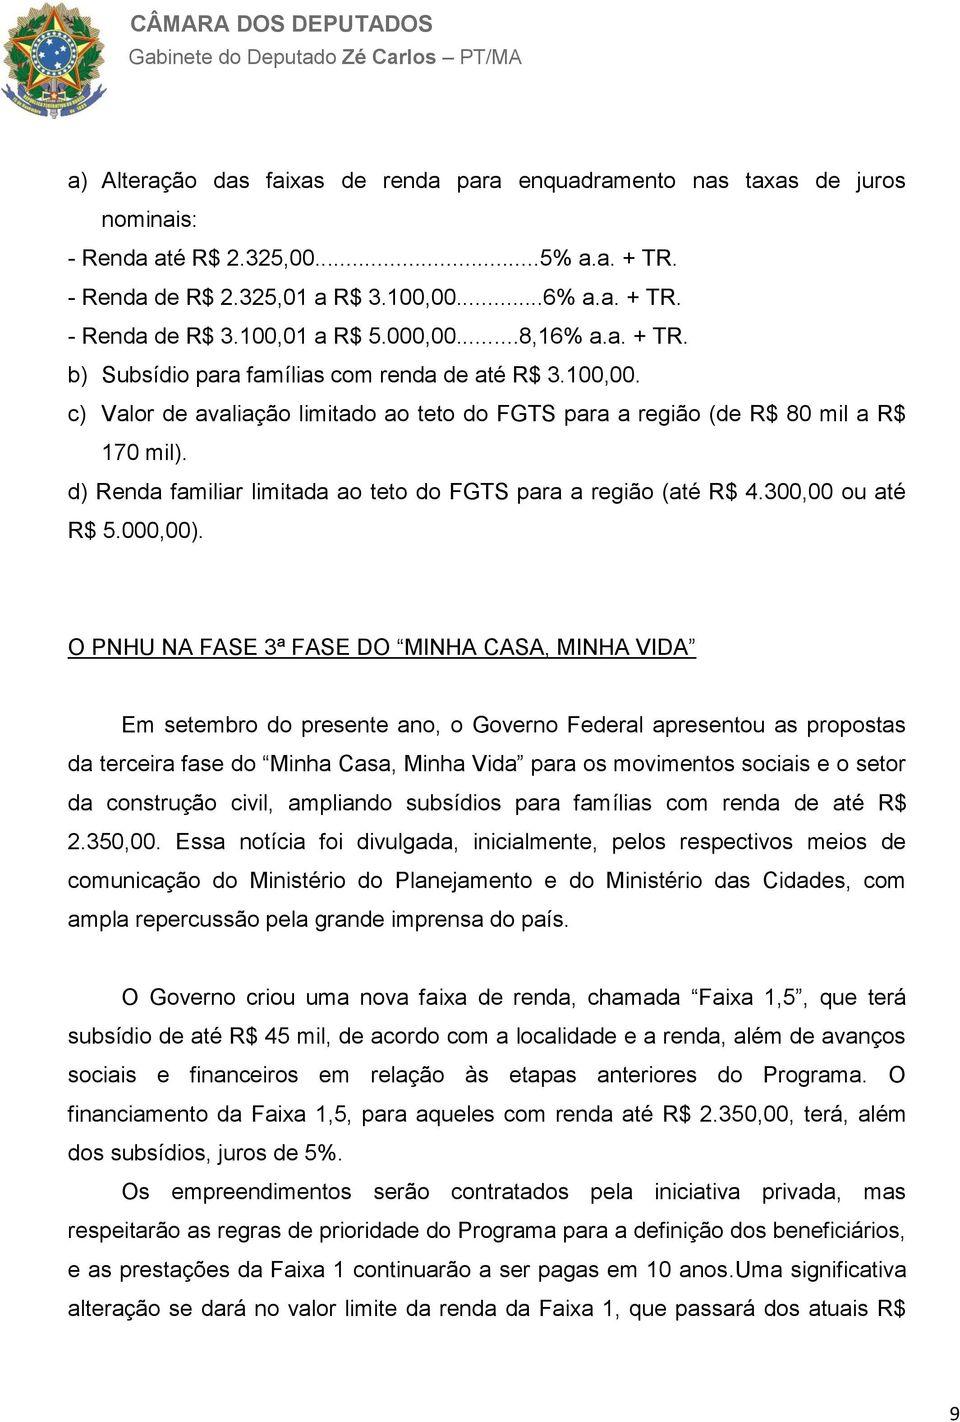 d) Renda familiar limitada ao teto do FGTS para a região (até R$ 4.300,00 ou até R$ 5.000,00).